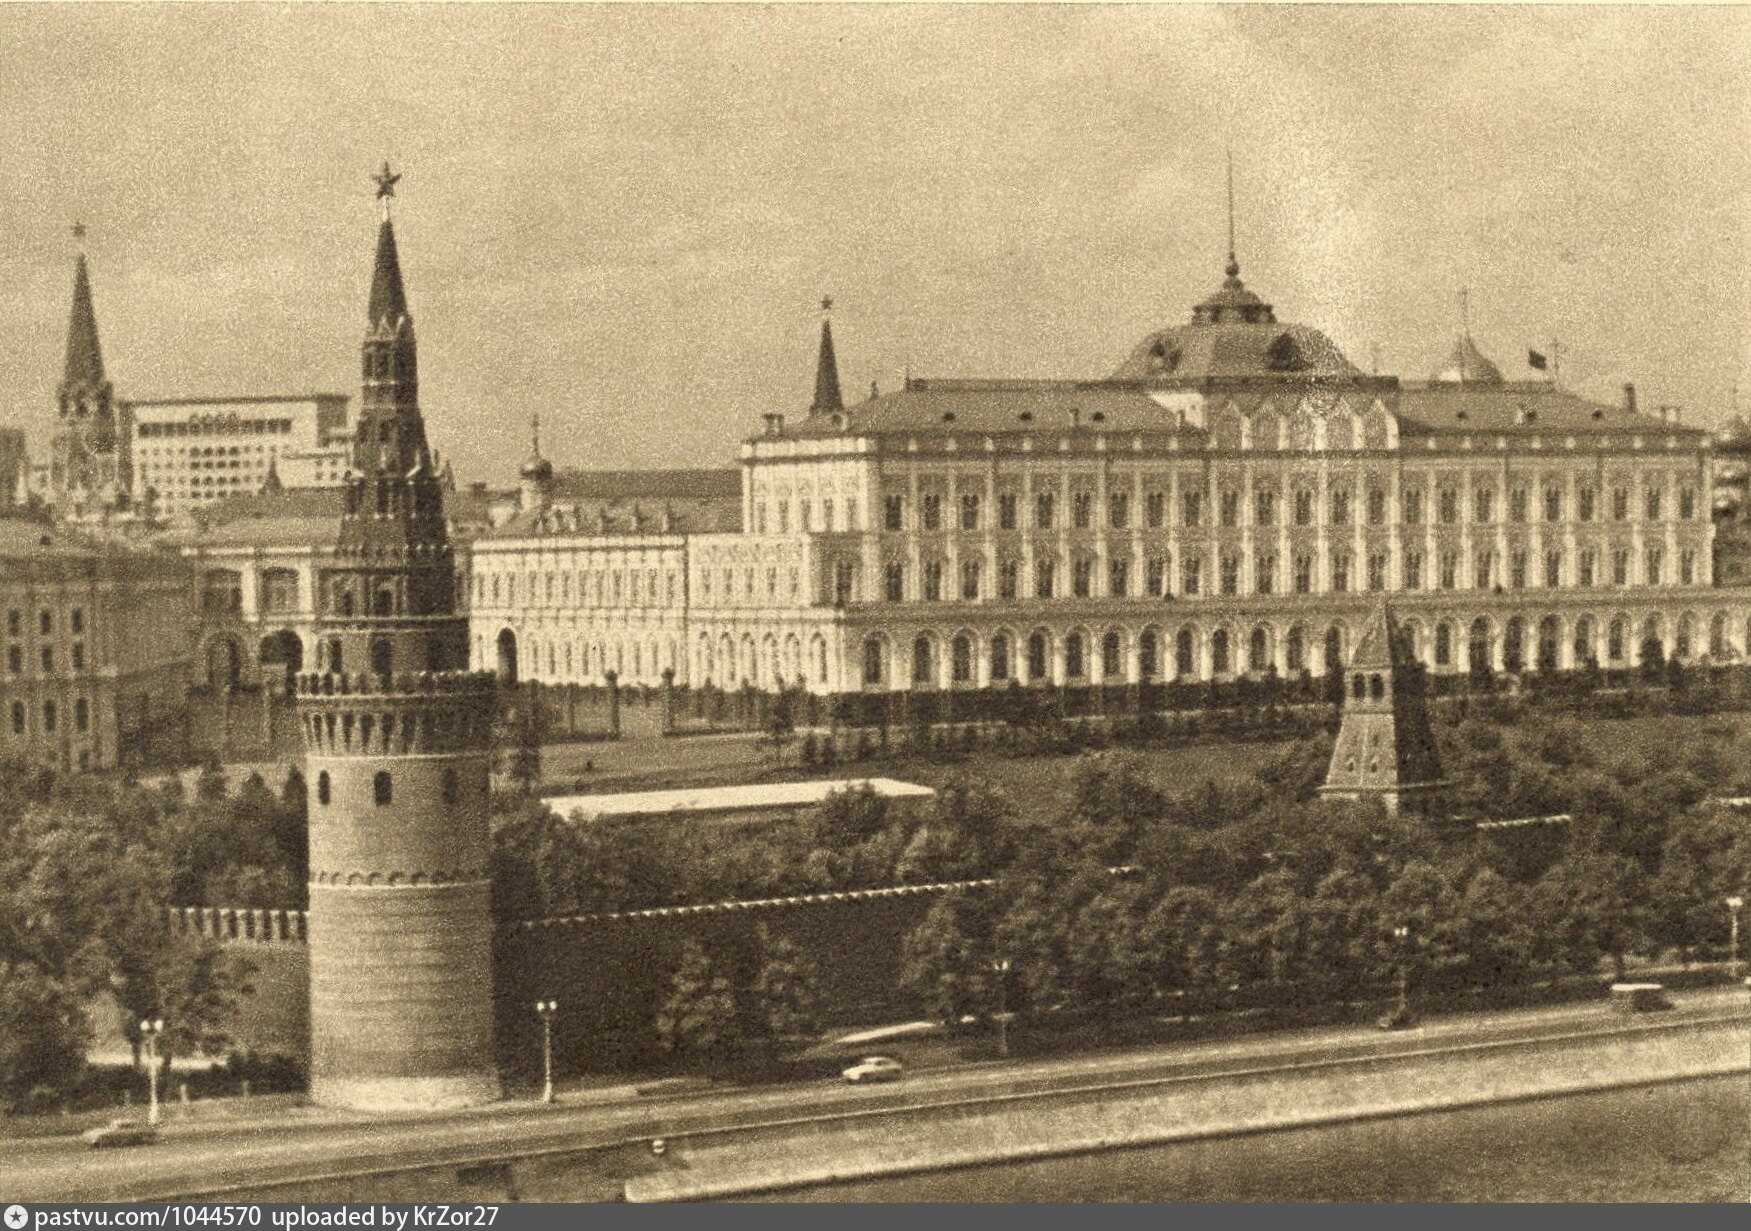 большой кремлевский дворец в москве все